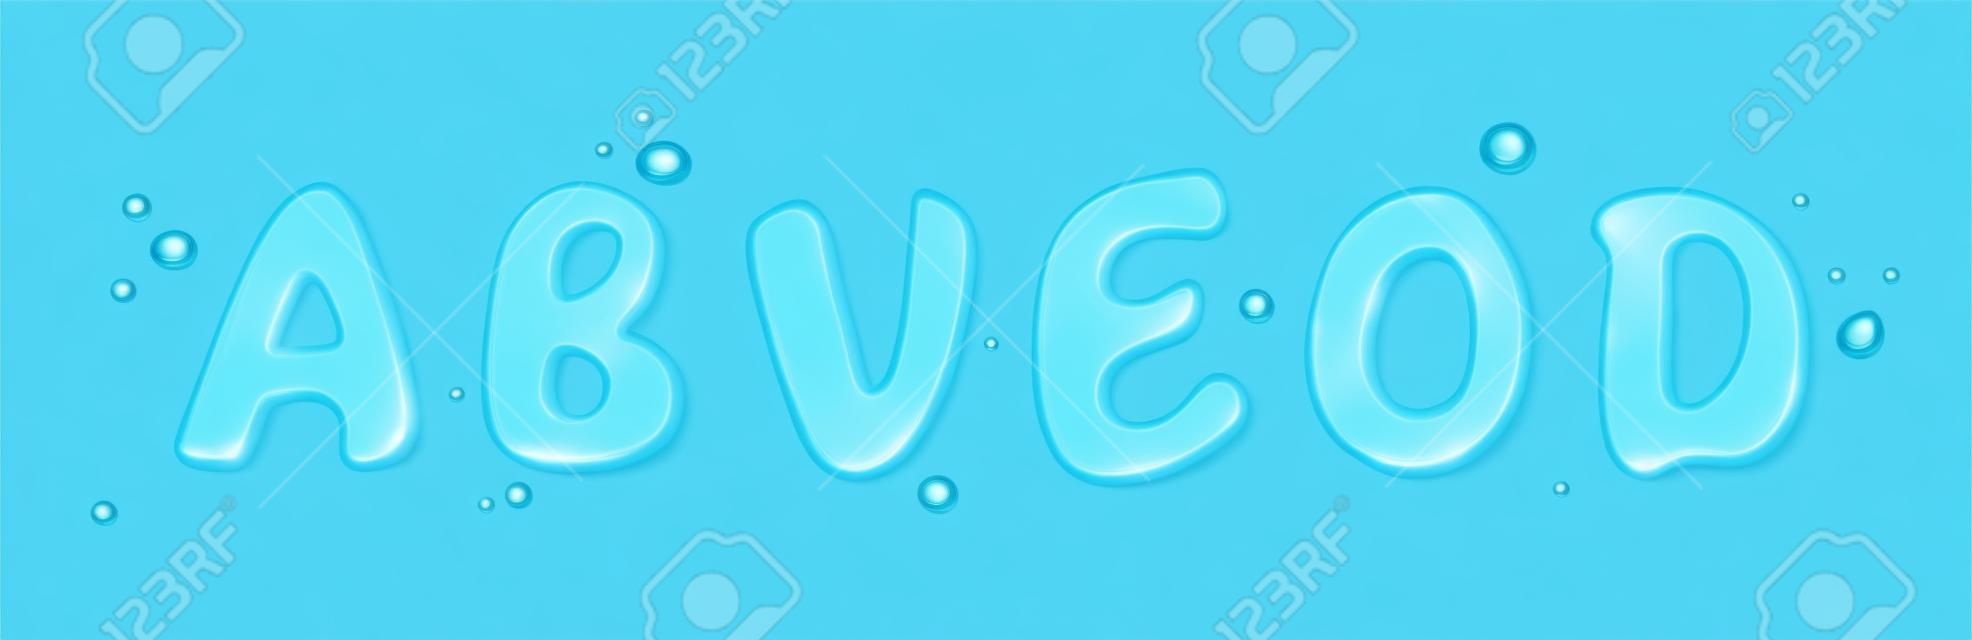 Carattere tipo acqua, set di lettere liquide. schizzi d'acqua puri a forma di caratteri di testo. acqua blu trasparente o gocce di gel a forma di lettere inglesi isolate su sfondo trasparente, set vettoriale realistico